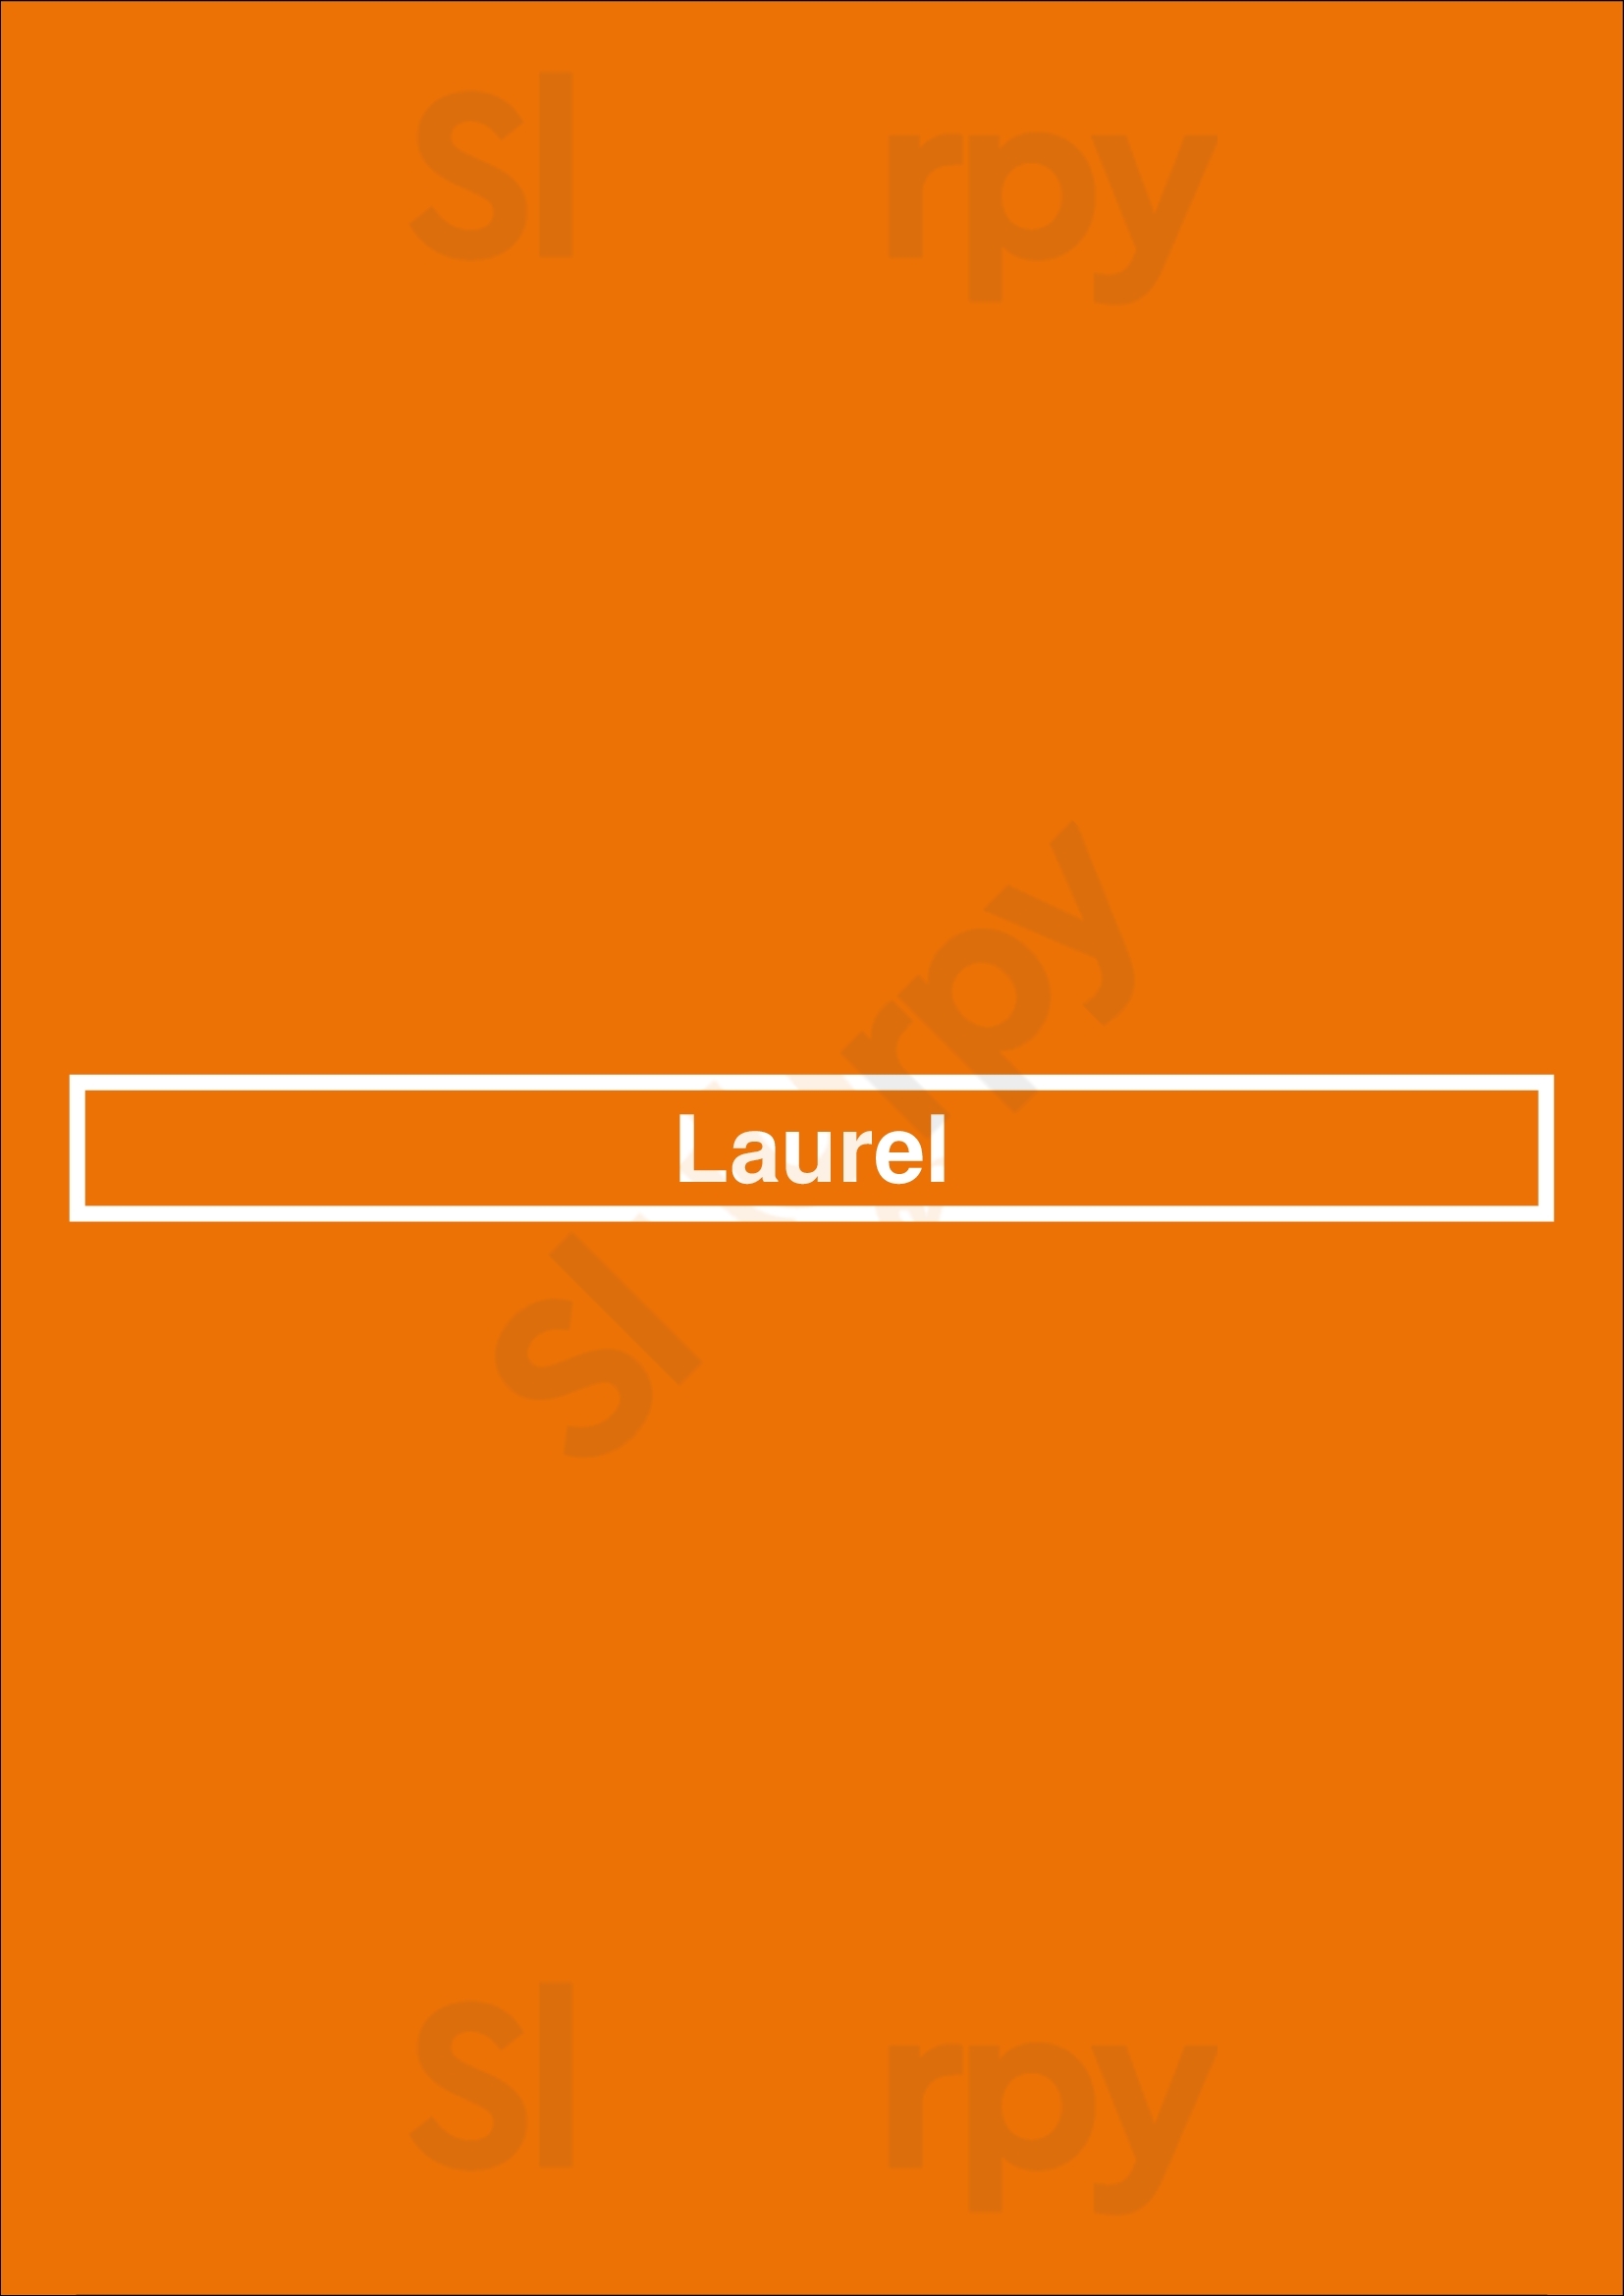 Laurel Philadelphia Menu - 1